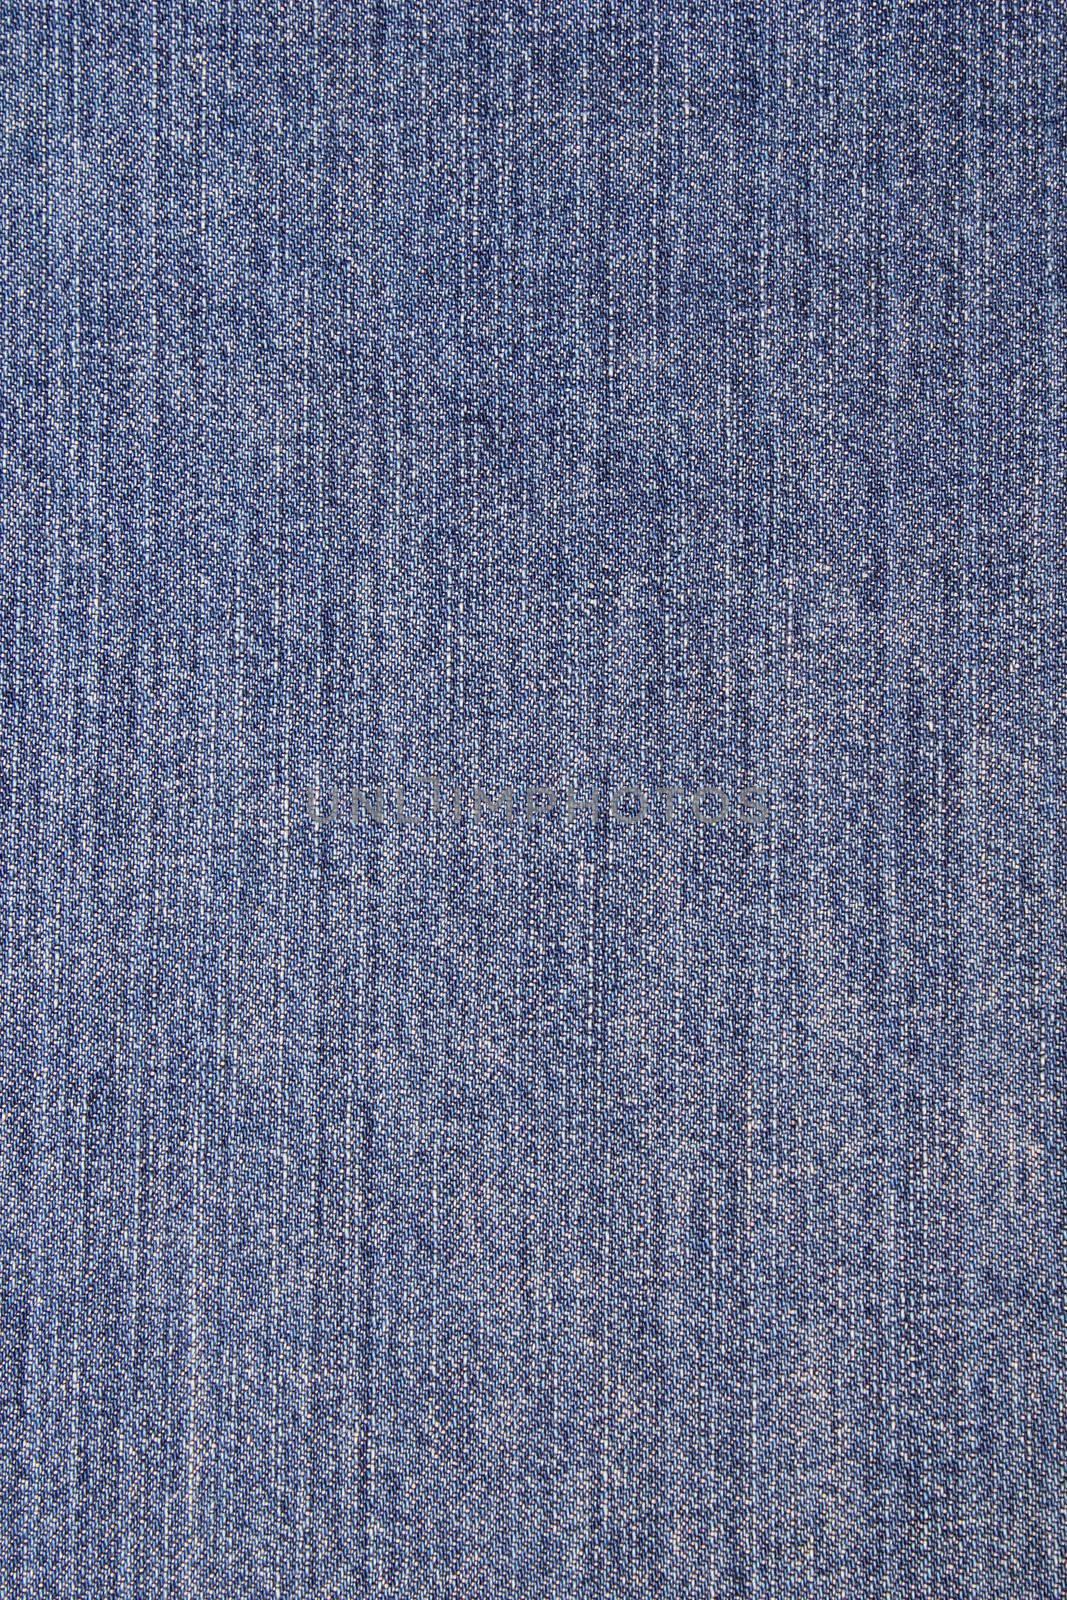 Blue jeans texture closeup photo